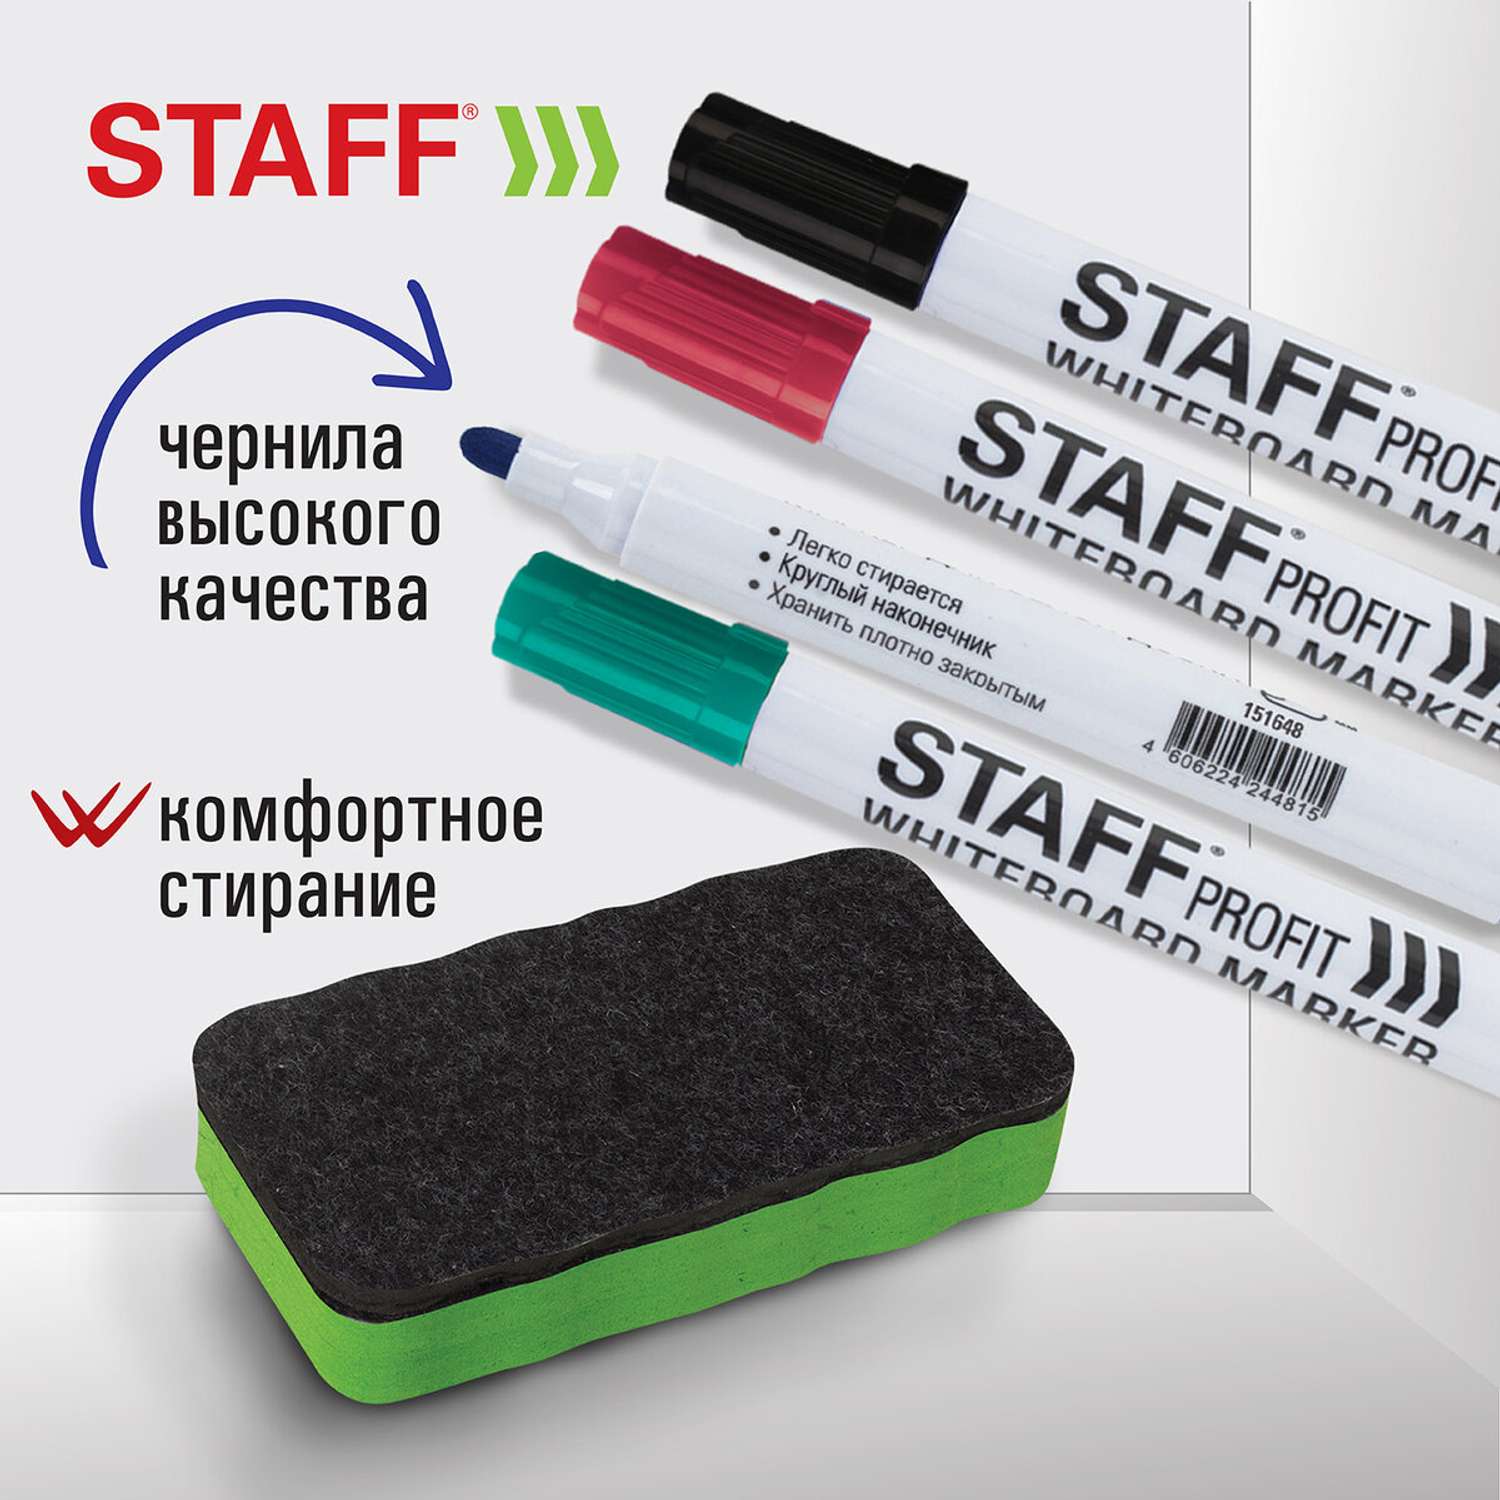 Набор для маркерной доски Staff губка-стиратель офисный и маркеры стираемые 4 штуки - фото 2